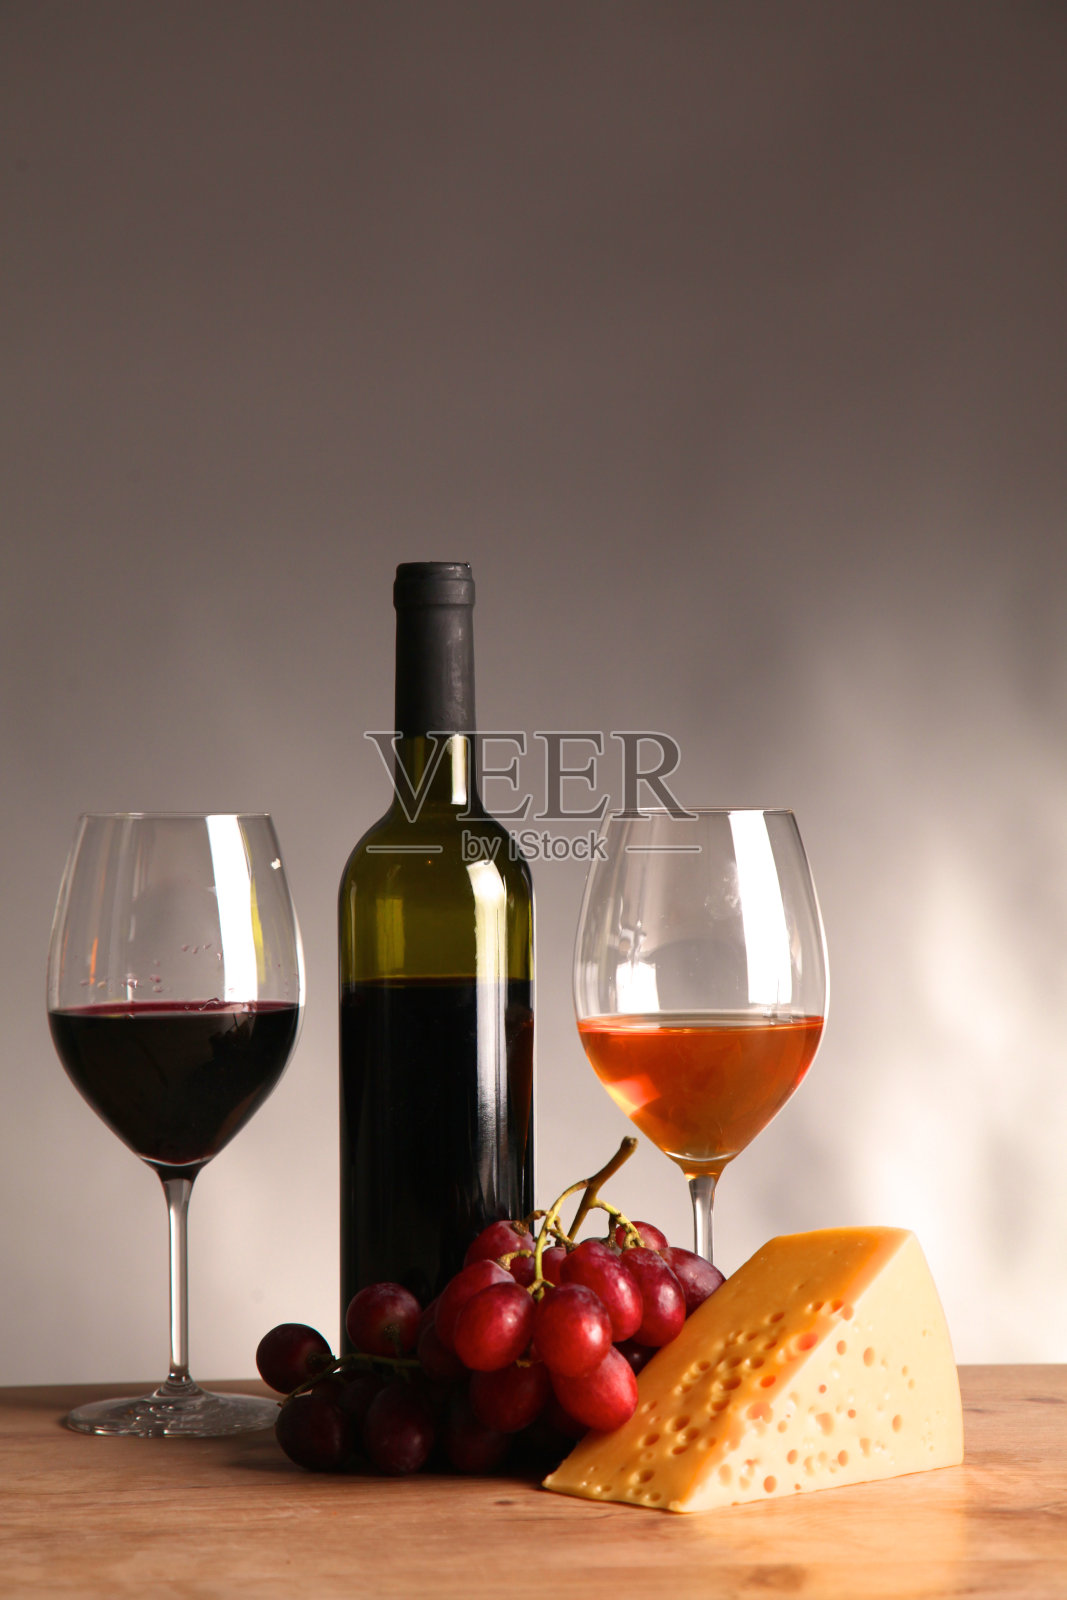 桌上有一瓶葡萄酒和一个玻璃杯照片摄影图片